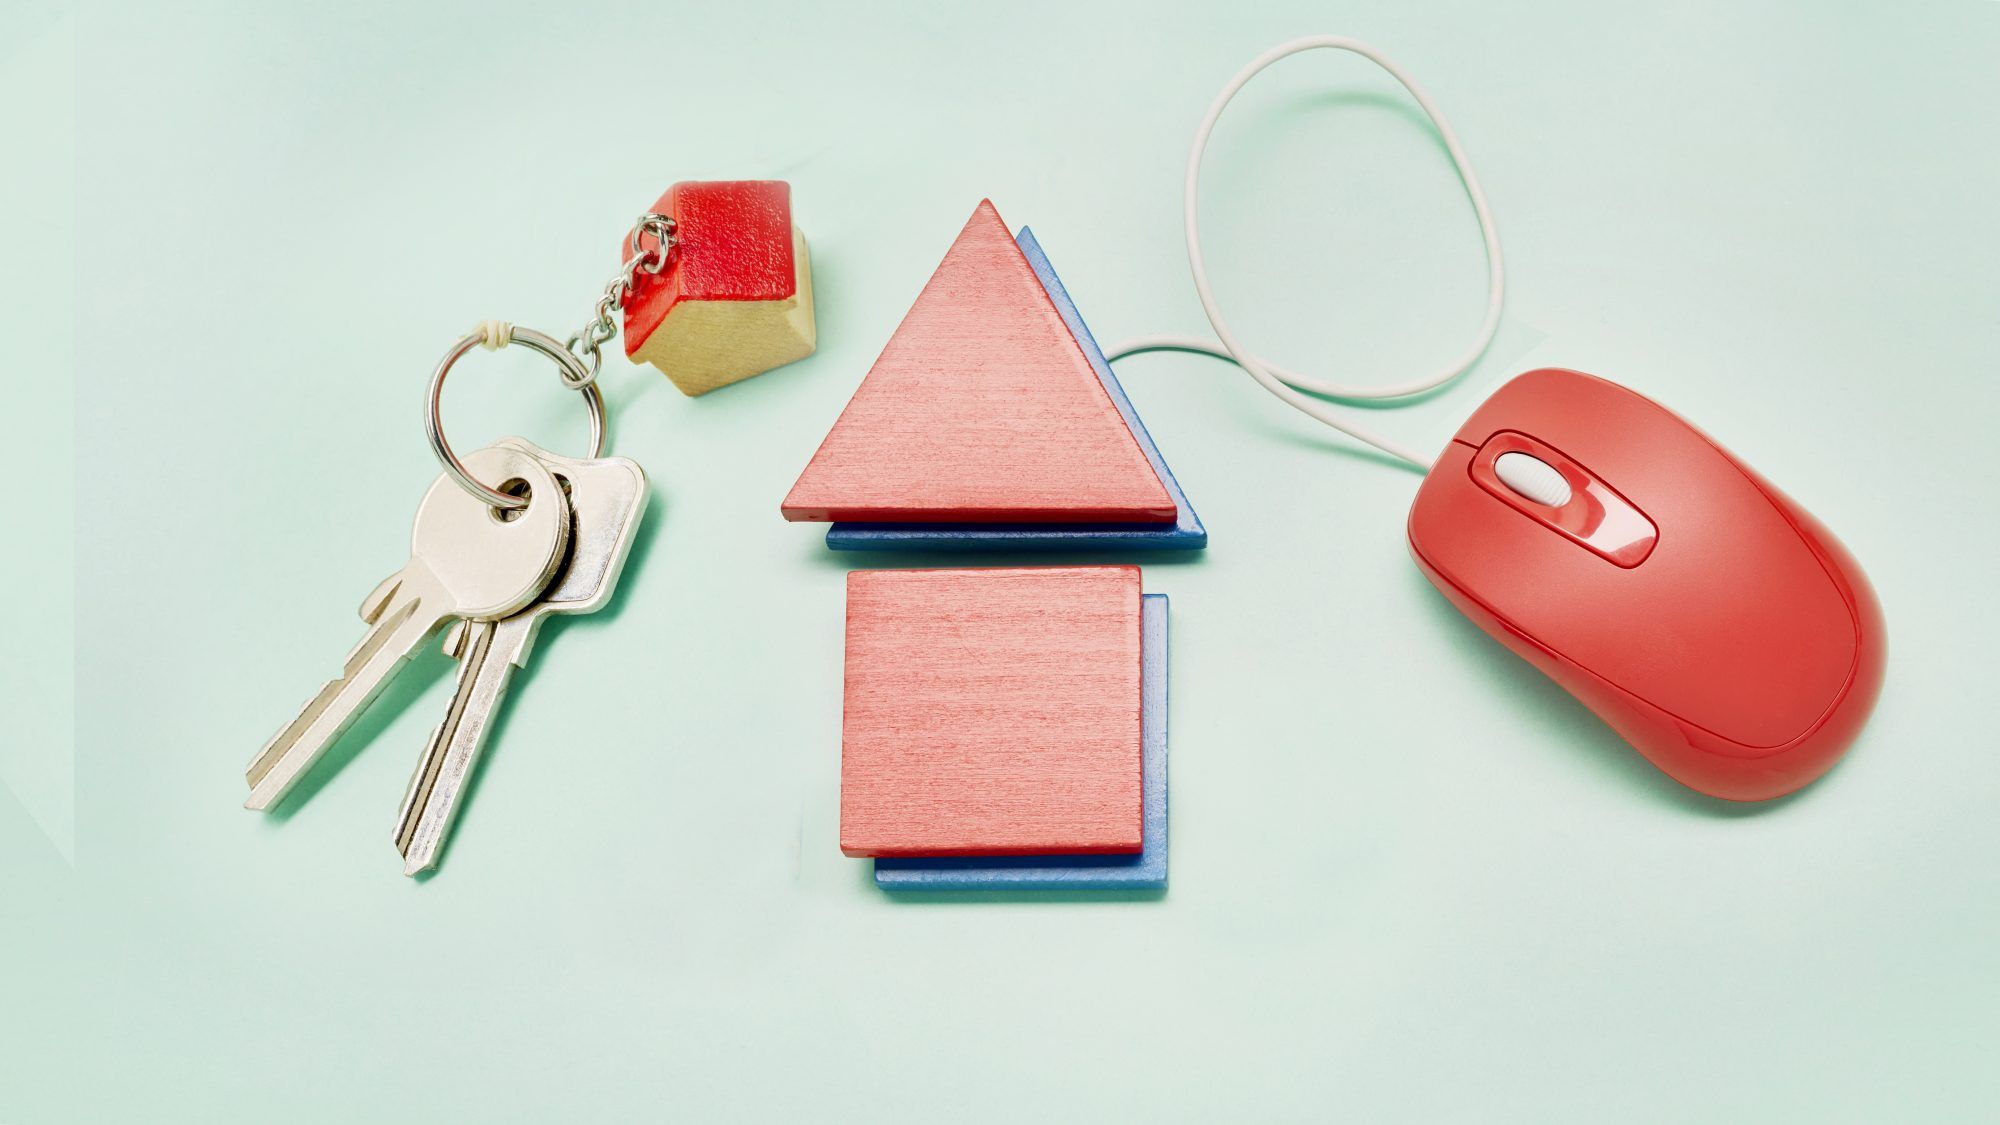 شراء منزل غير مرئي: مفاتيح المنزل